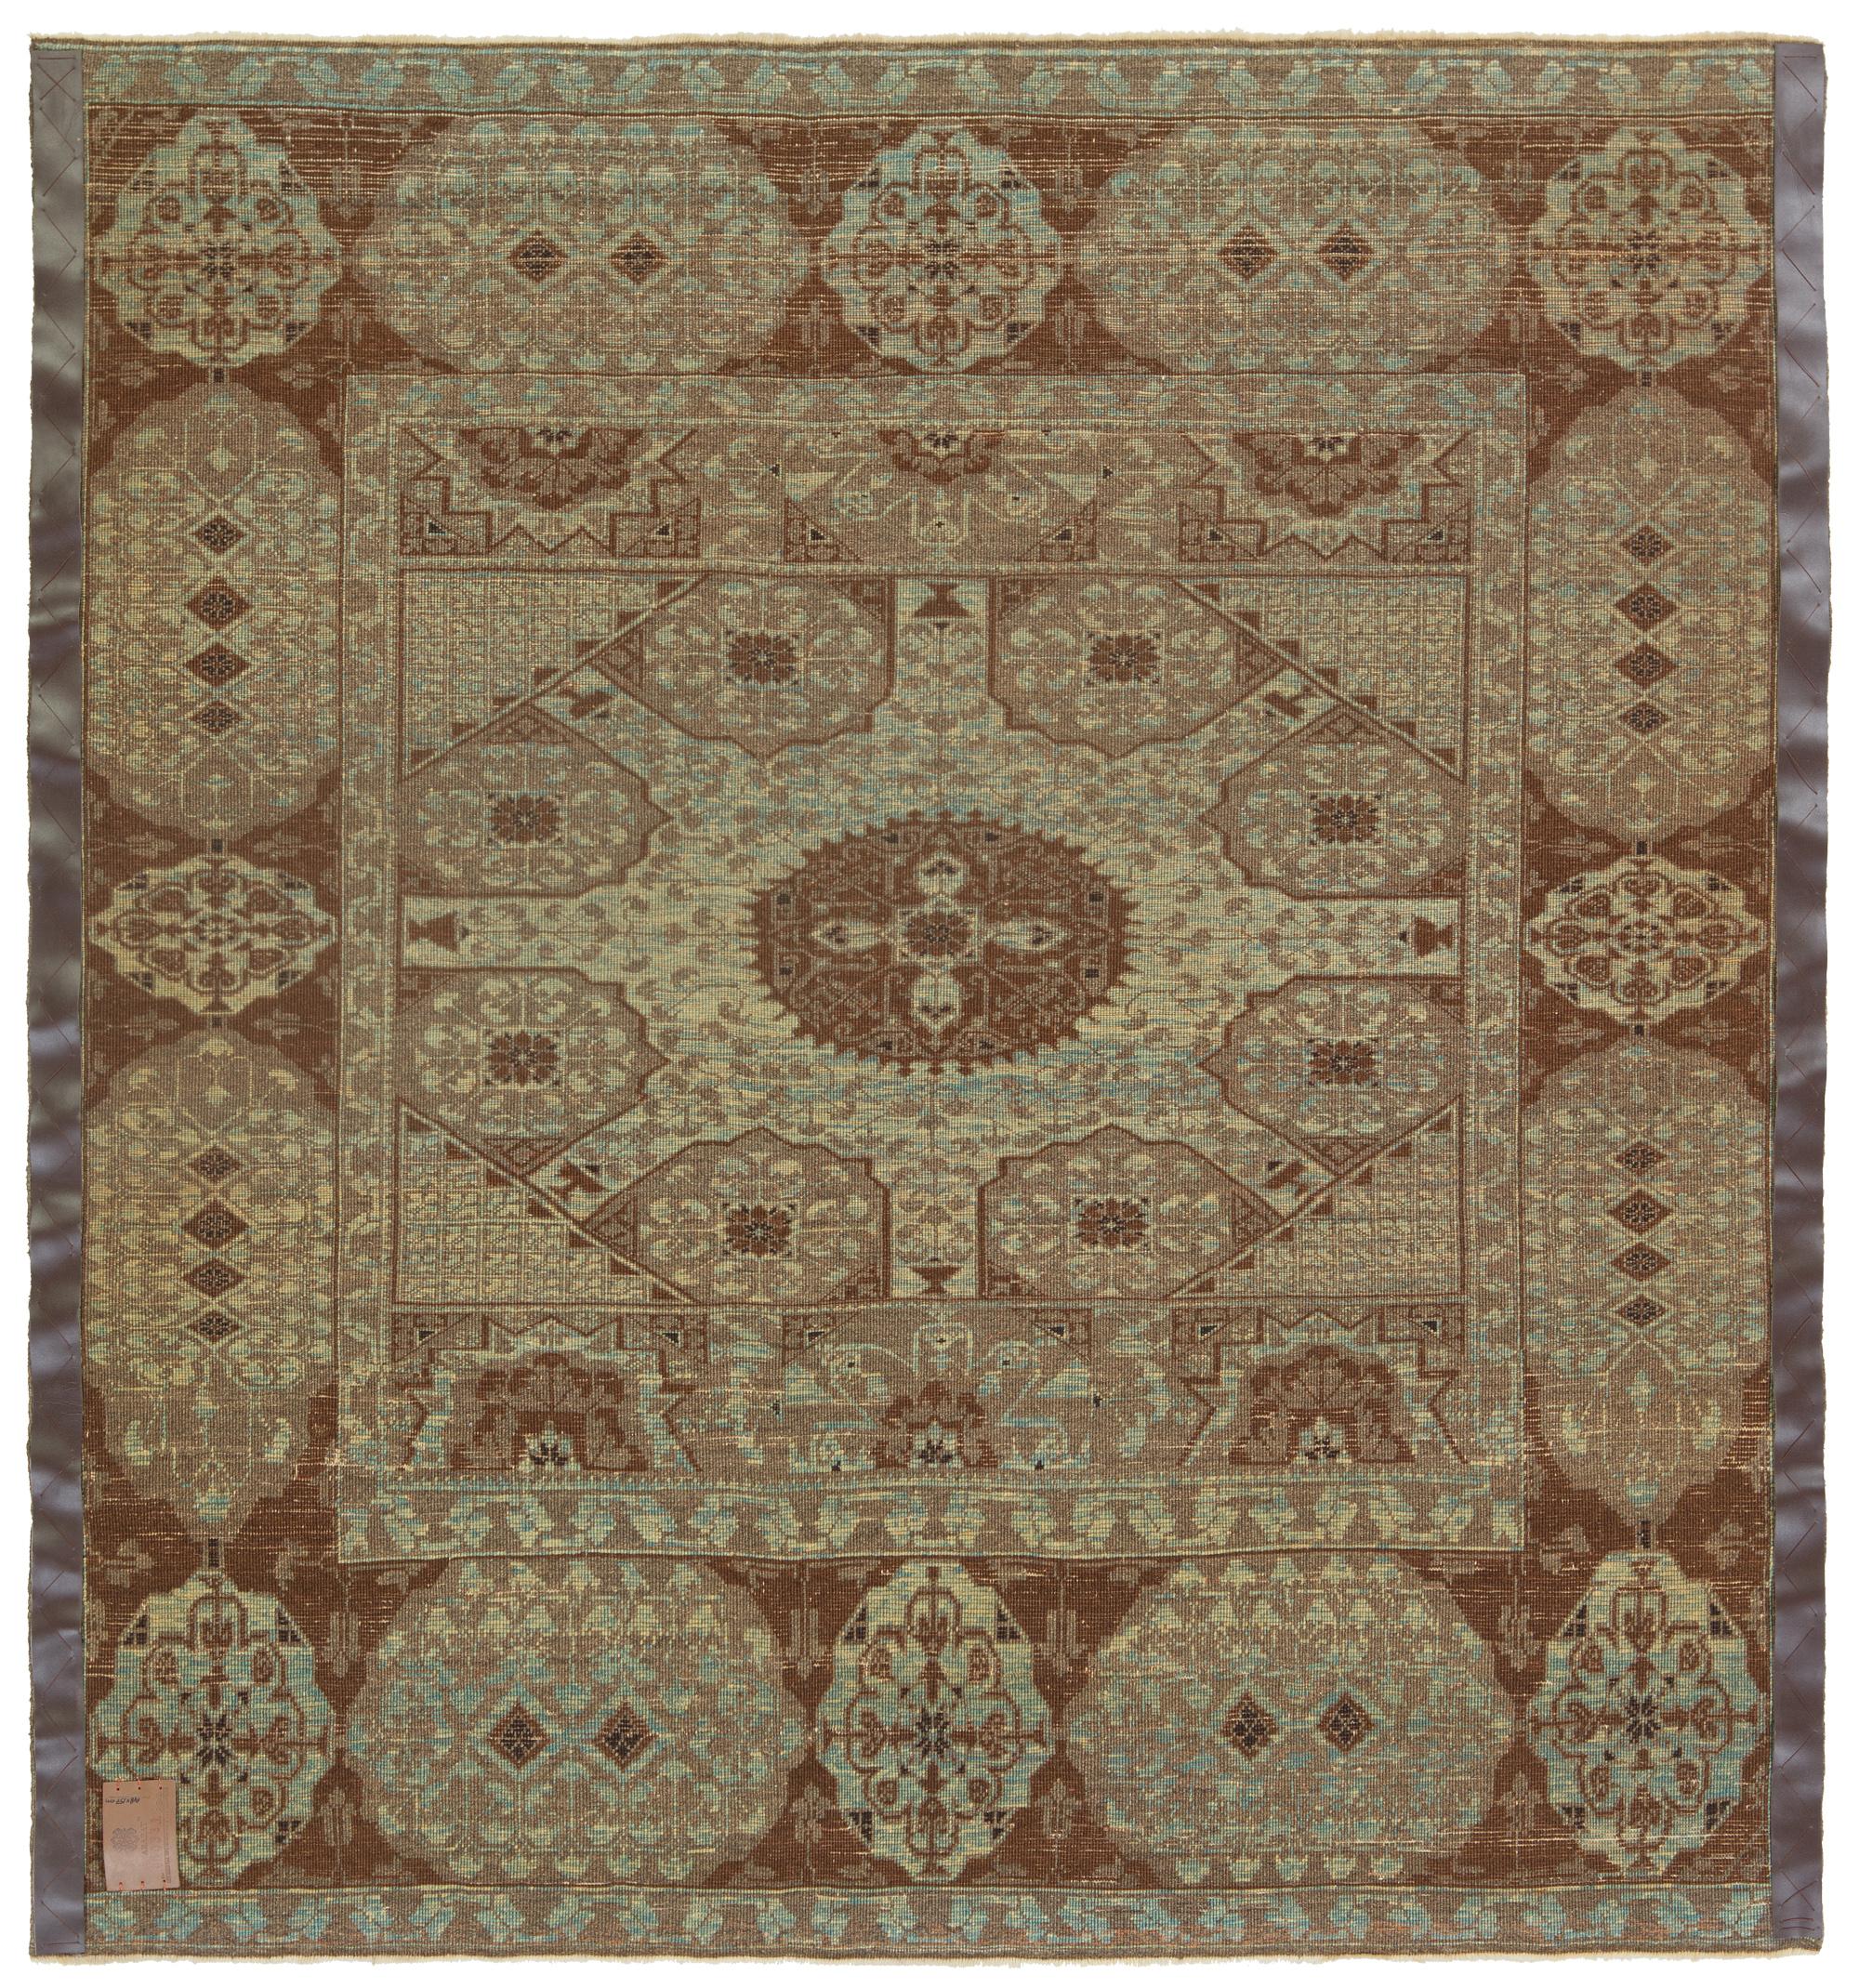 Die Quelle des Teppichs stammt aus dem Buch Renaissance of Islam, Art of the Mamluks, Esin Atil, Smithsonian Institution Press, Washington D.C., 1981 nr.125. Dies ist ein Teppich mit einem Becher-Motiv-Design aus dem späten 15. Jahrhundert von